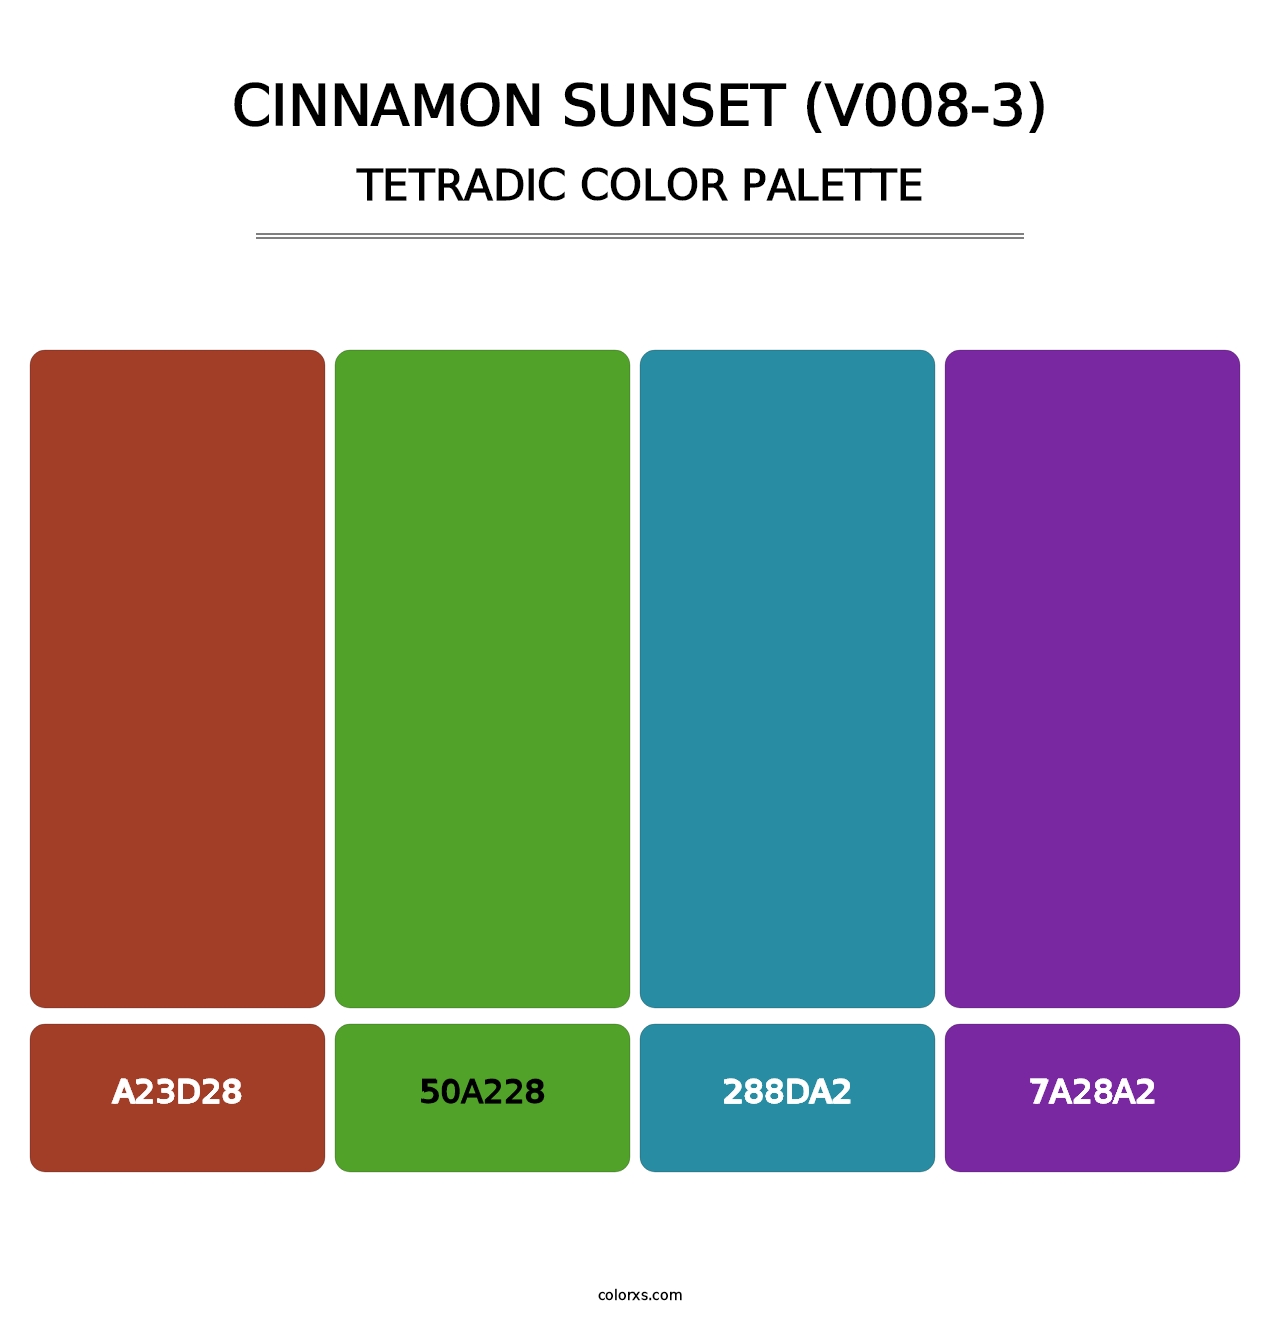 Cinnamon Sunset (V008-3) - Tetradic Color Palette